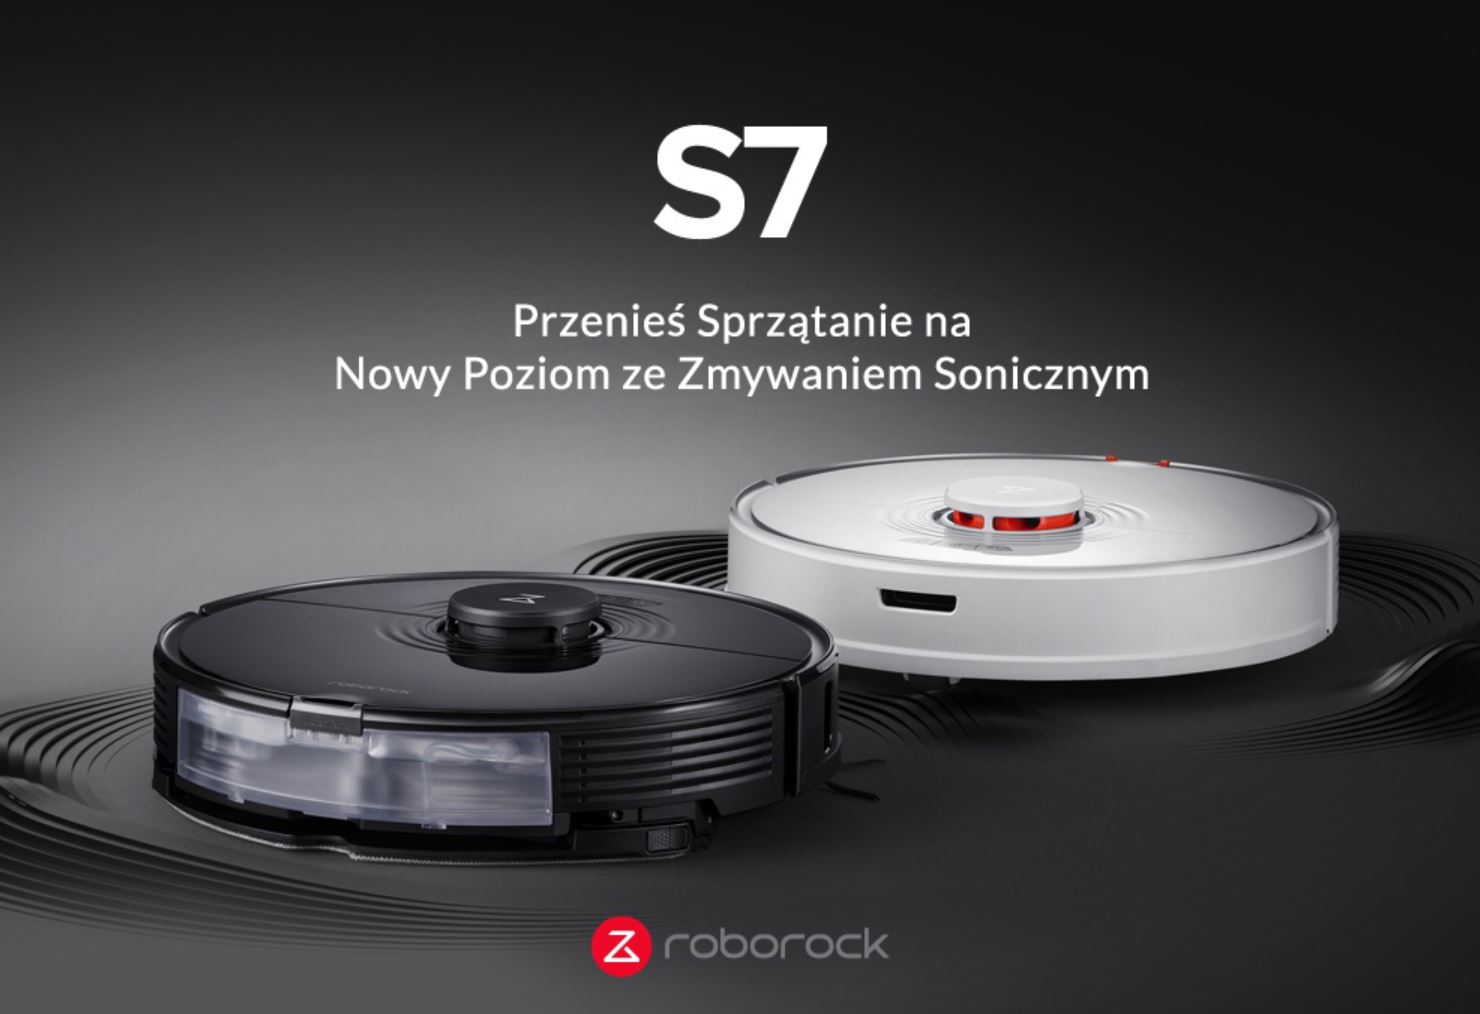 Roborock S7 w promocji - kod rabatowy geekbuying.pl - soniczny mop